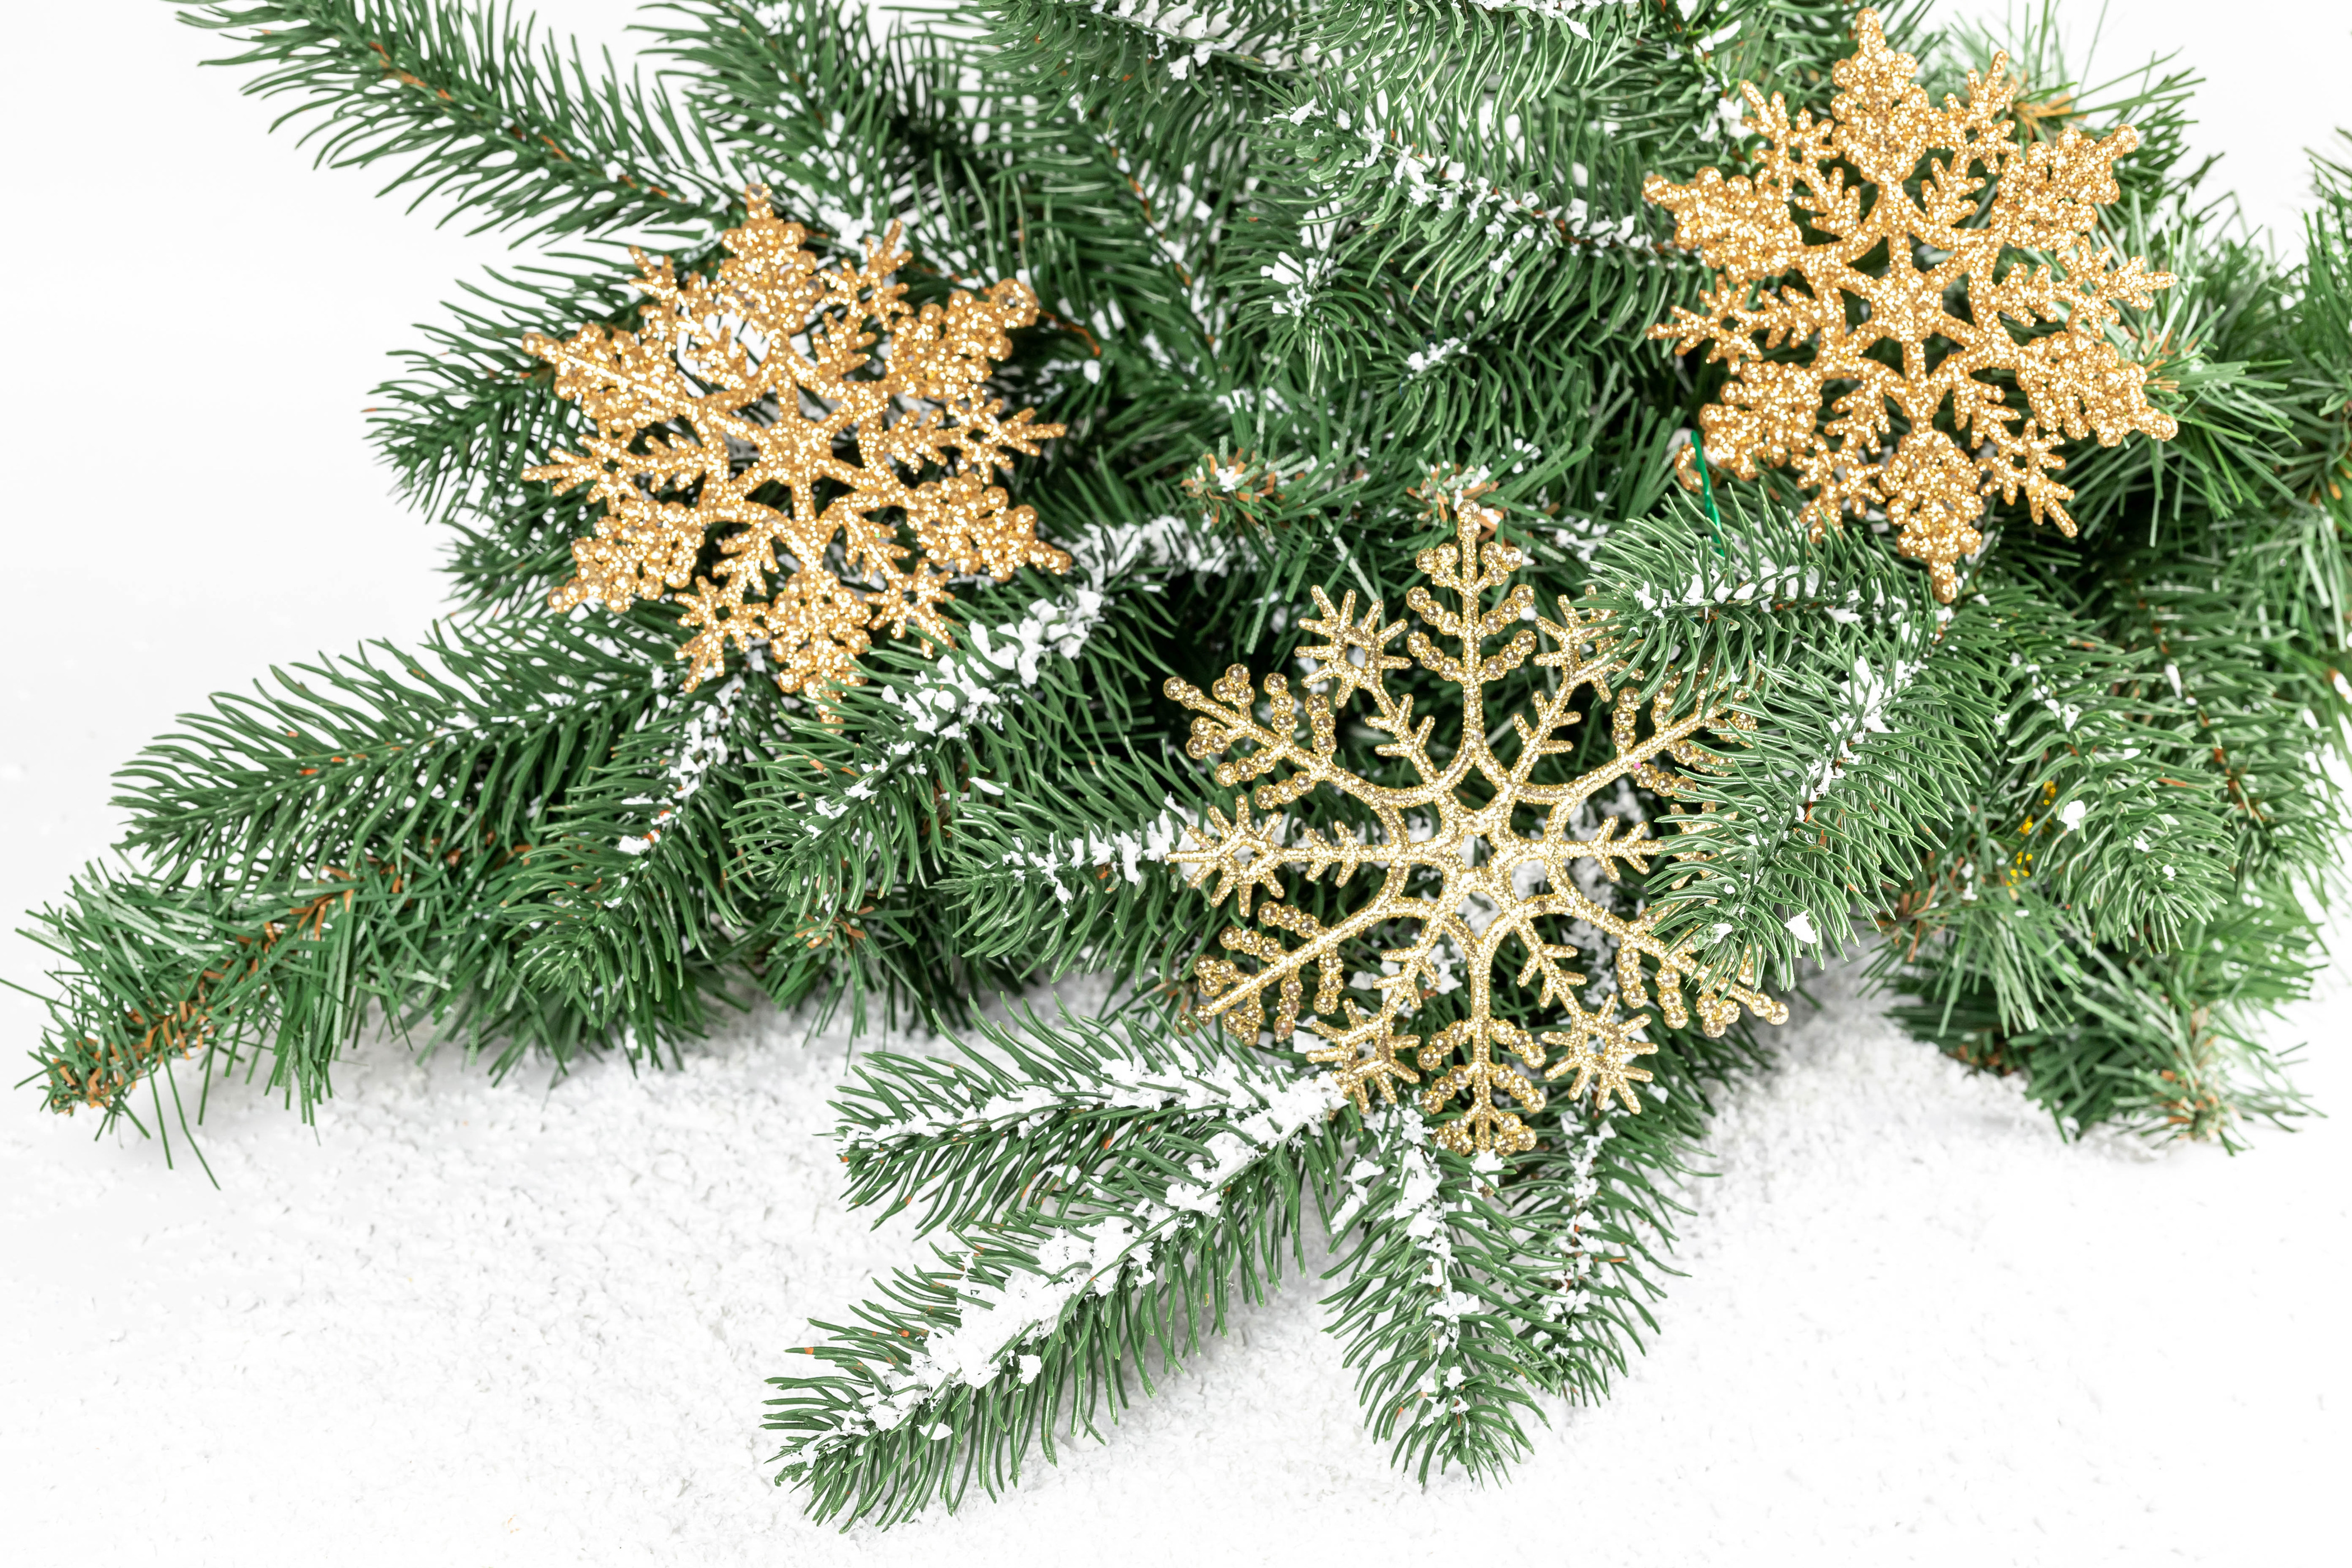 Фотографии Рождество снежинка снегу на ветке белом фоне 4200x2800 Новый год Снежинки Снег снега снеге ветвь ветка Ветки Белый фон белым фоном